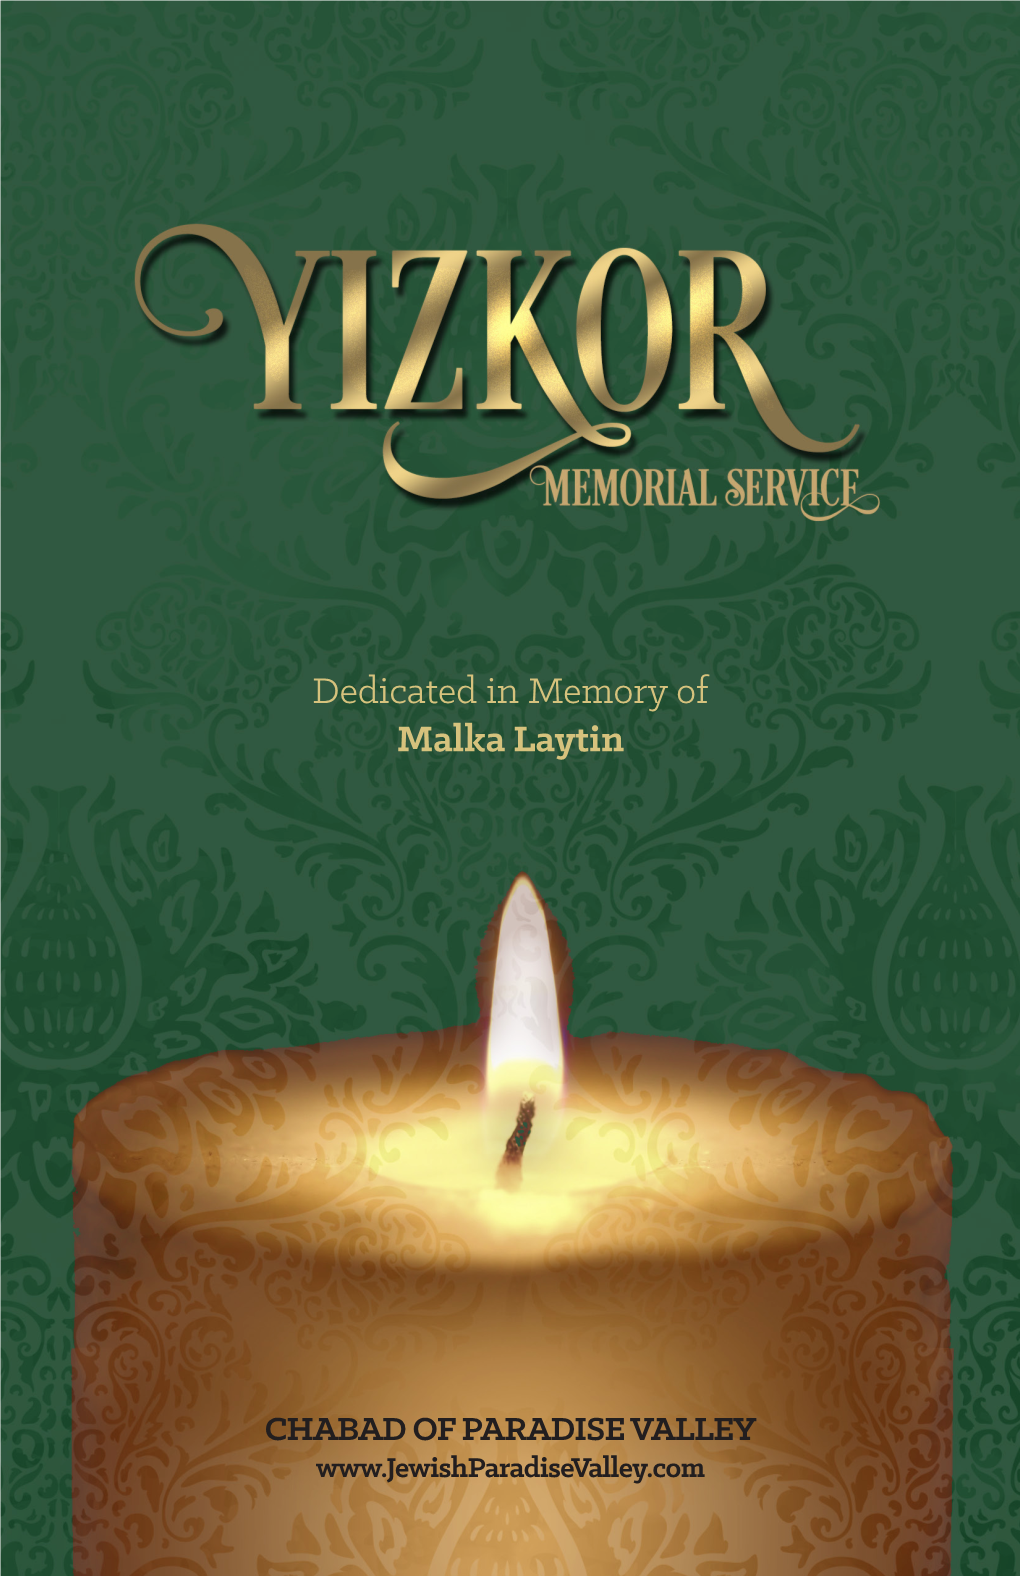 Dedicated in Memory of Malka Laytin